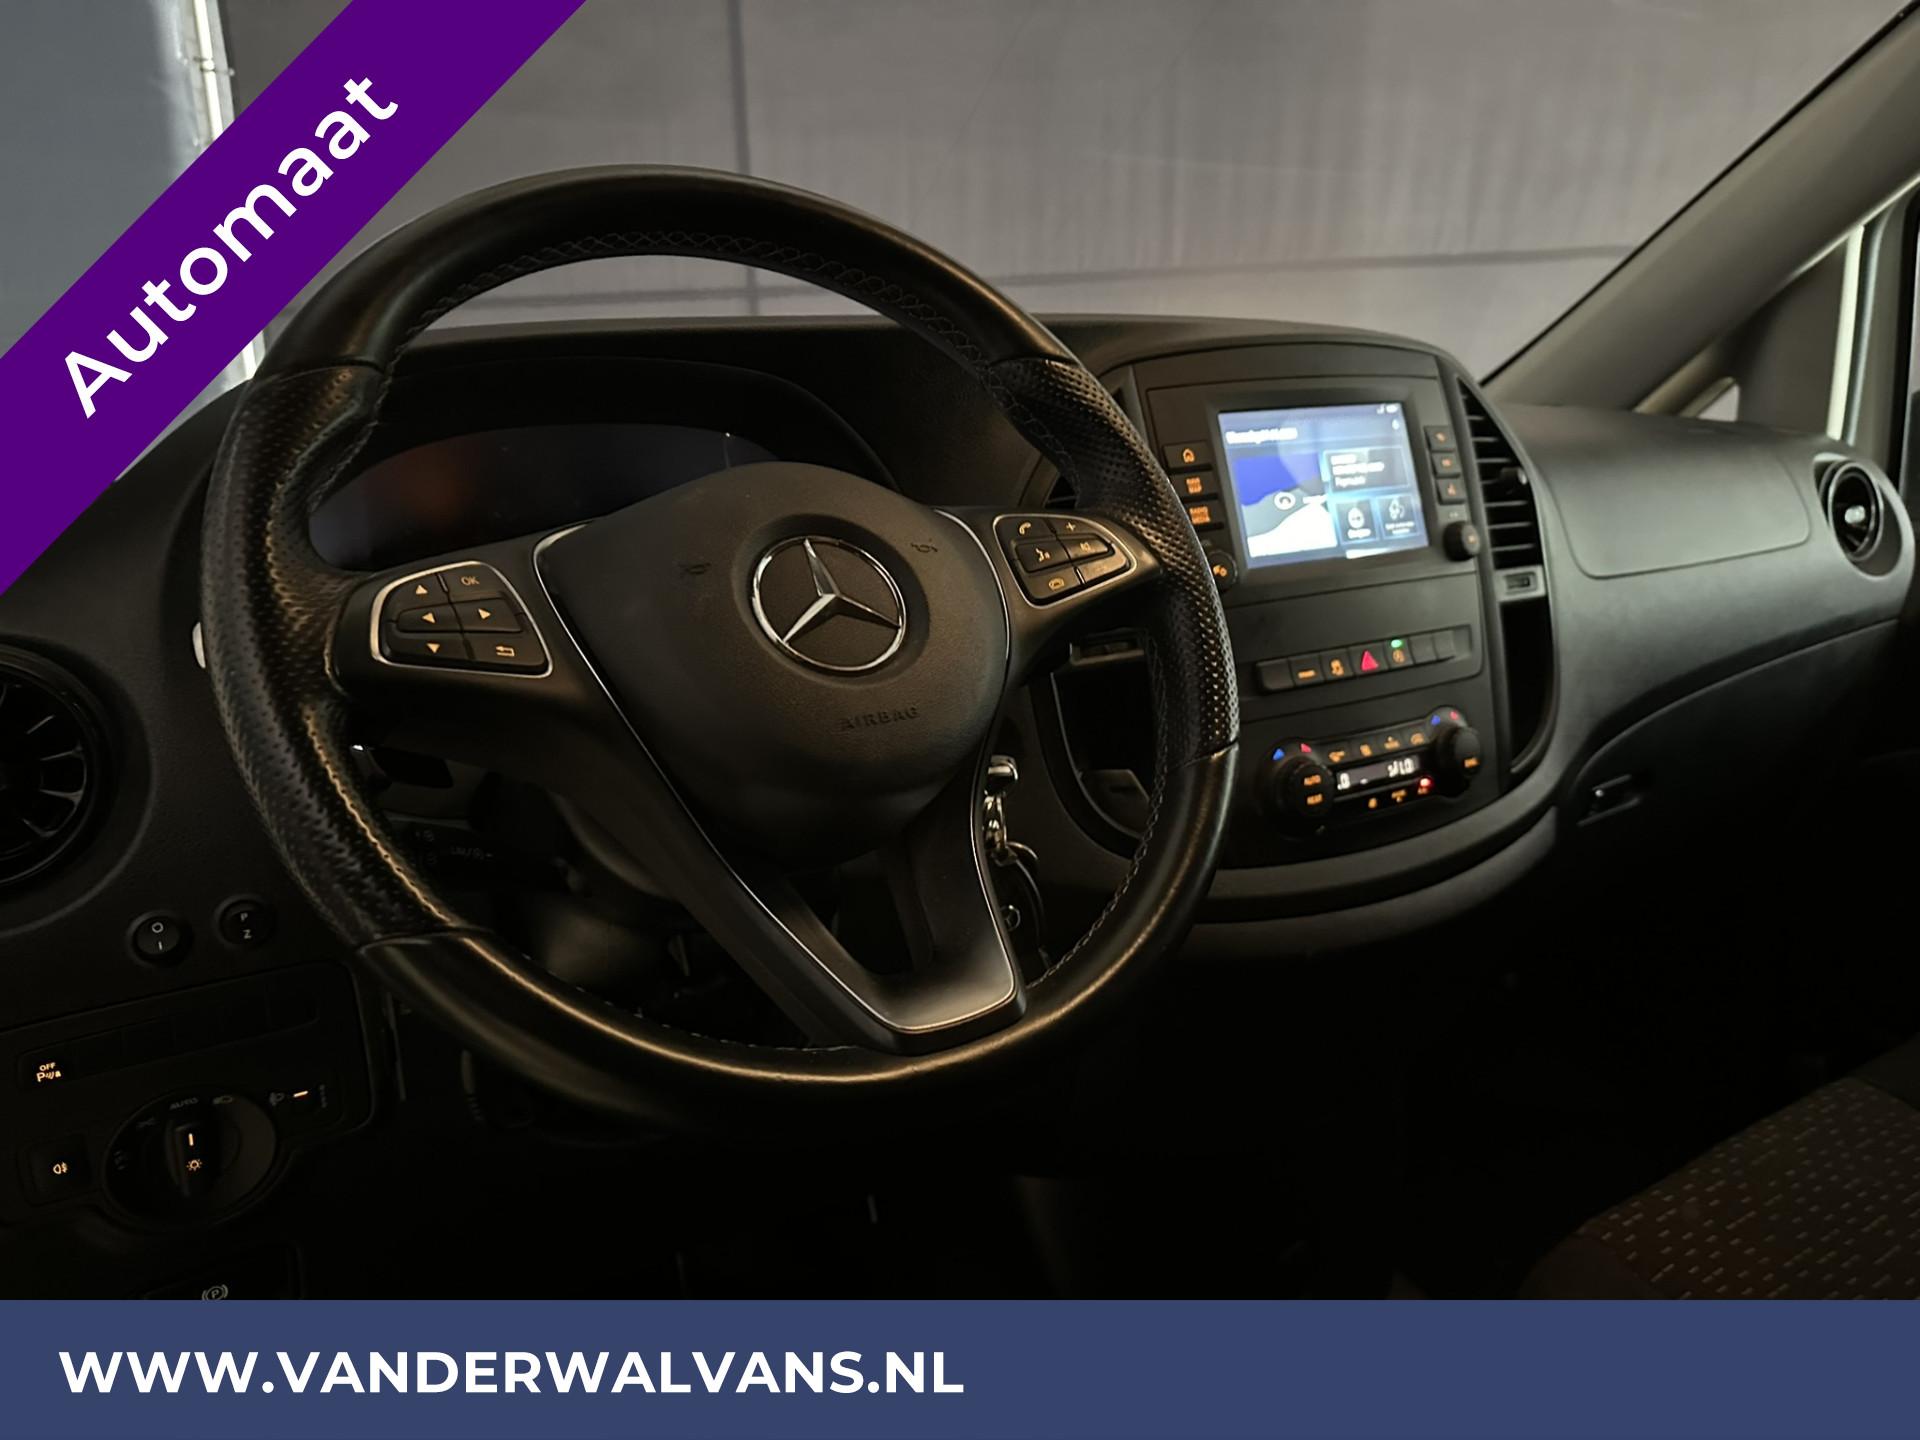 Foto 15 van Mercedes-Benz Vito 114 CDI 136pk 9G Tronic Automaat L2H1 Euro6 Airco | Camera | Navigatie | 2500kg Trekhaak